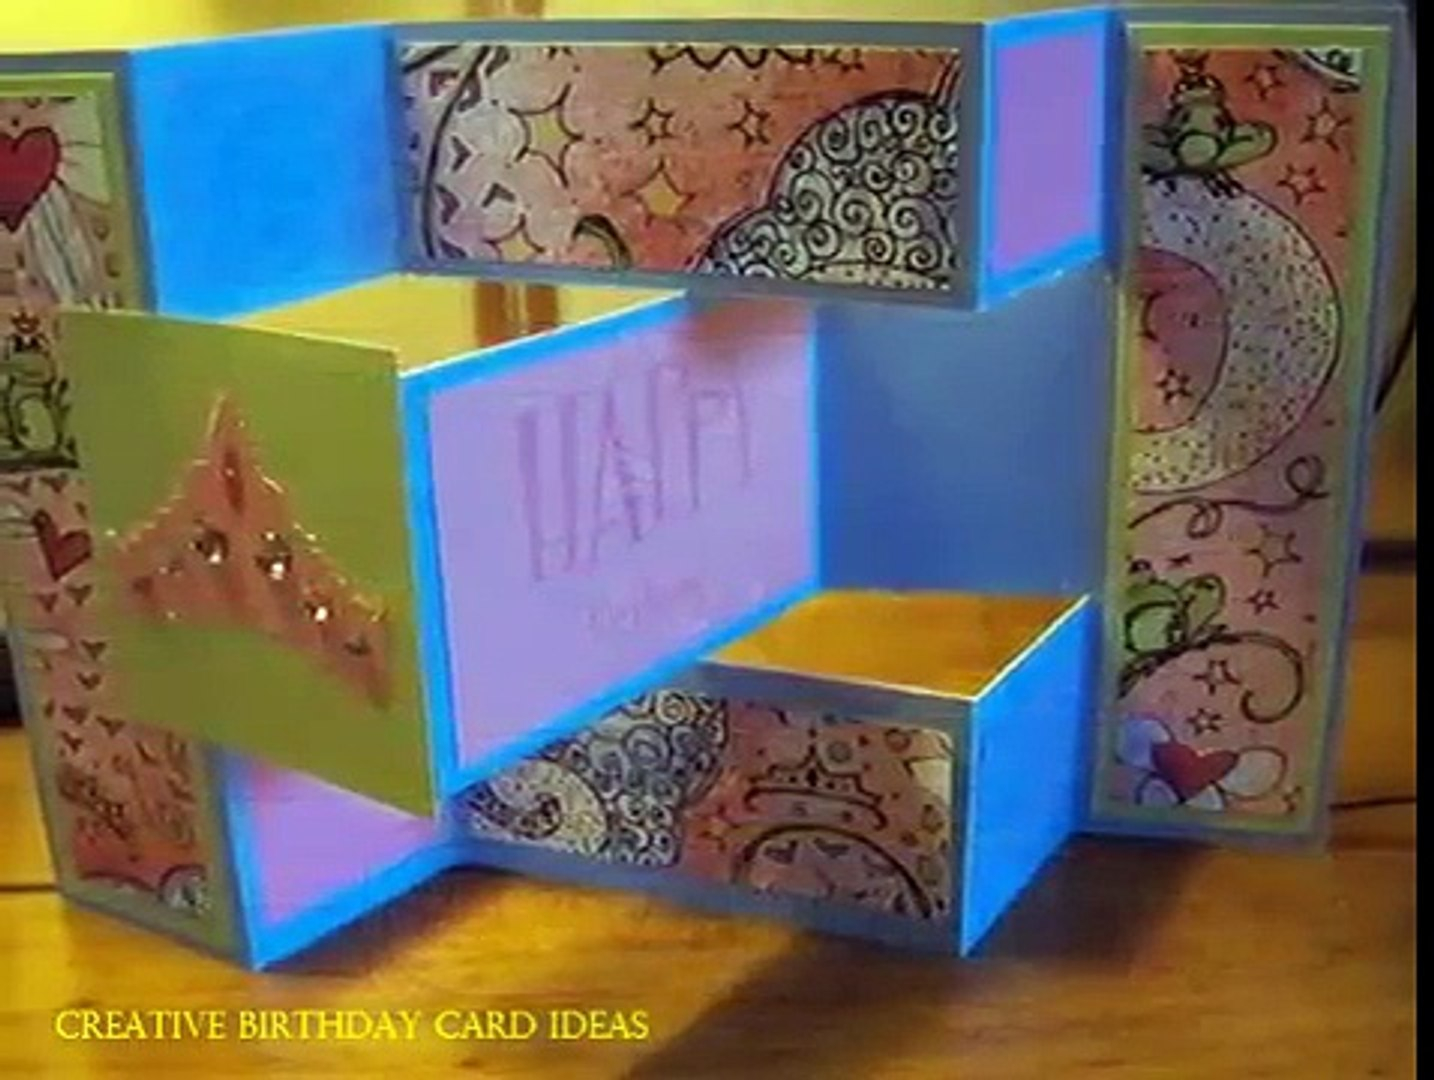 Creative Ideas For Birthday Cards Creative Birthday Card Ideas